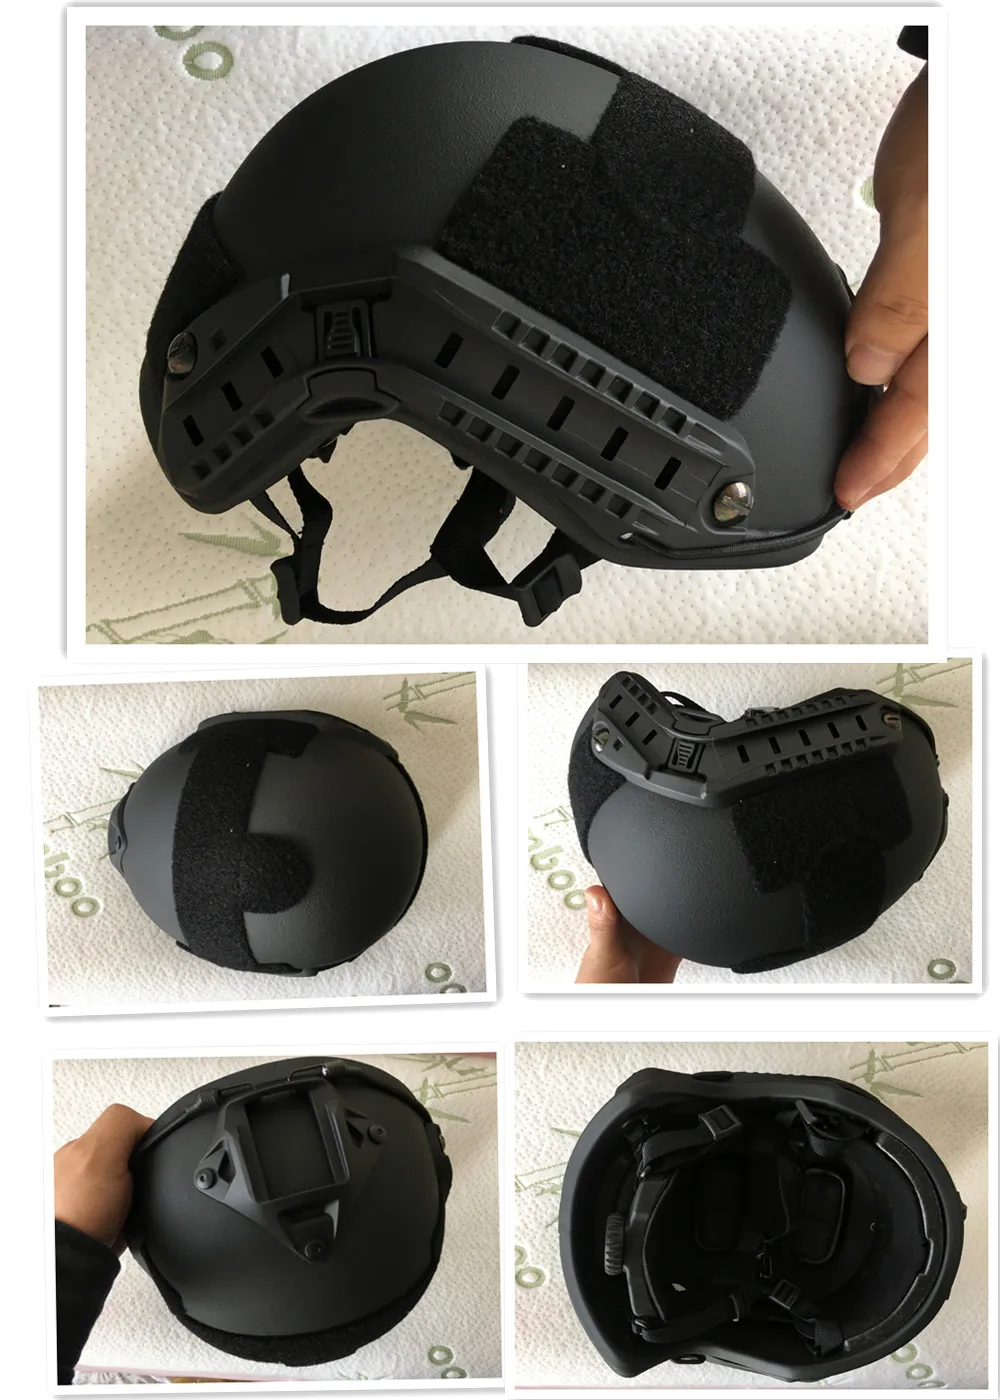 DEWBest Быстрый пуленепробиваемый баллистический шлем стандарта США NIJ IIIA Арамид для защиты безопасности